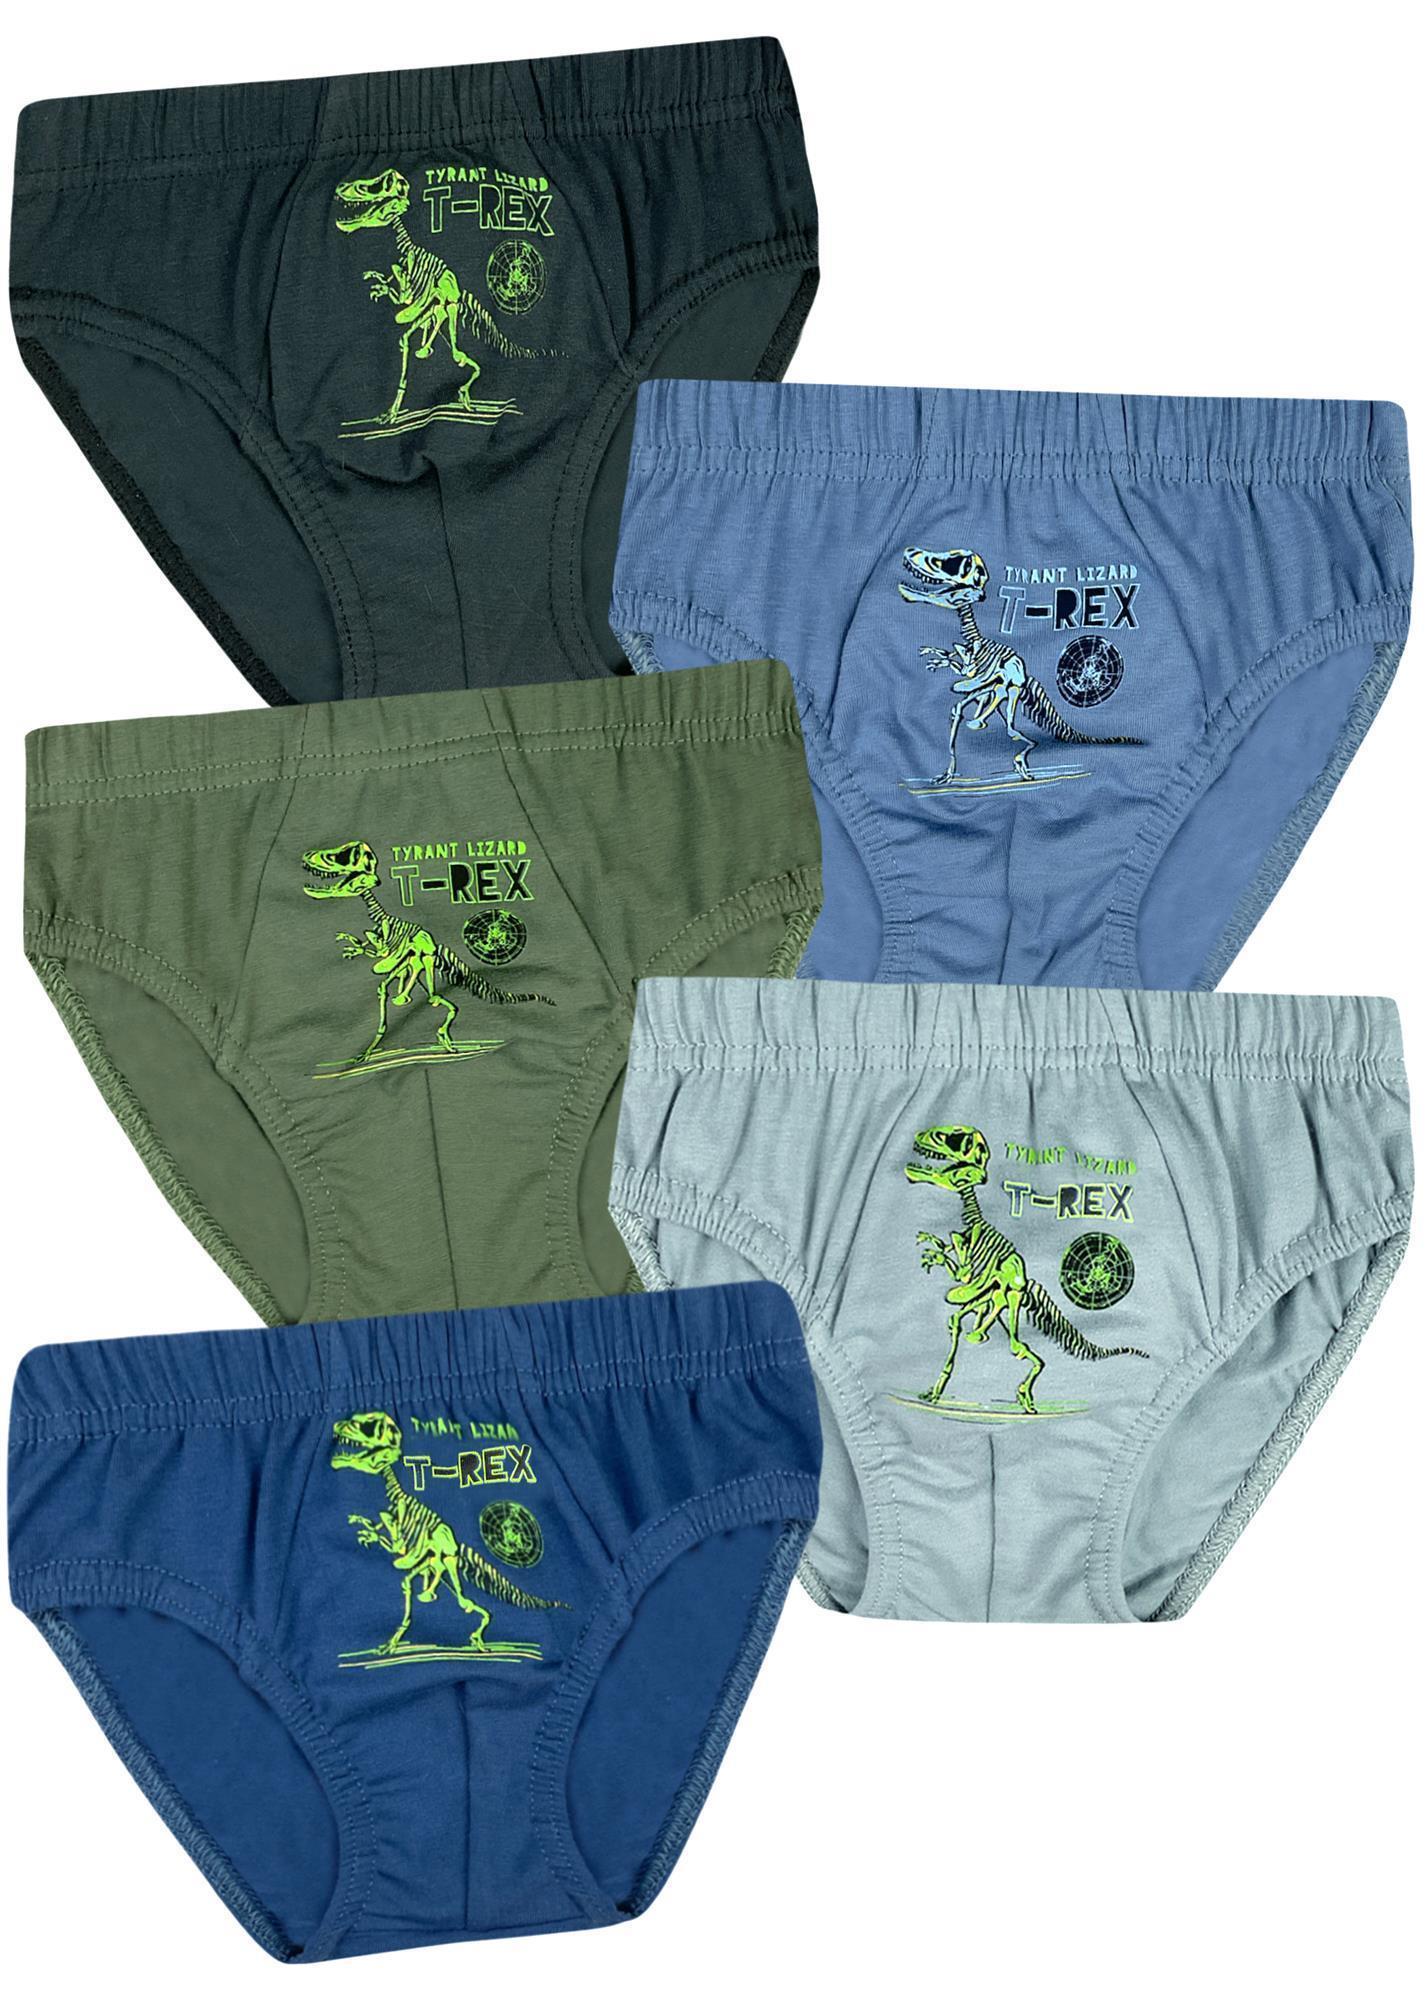 5 Jungen Slips Baumwolle Unterhosen Unterwäsche - T-Rex